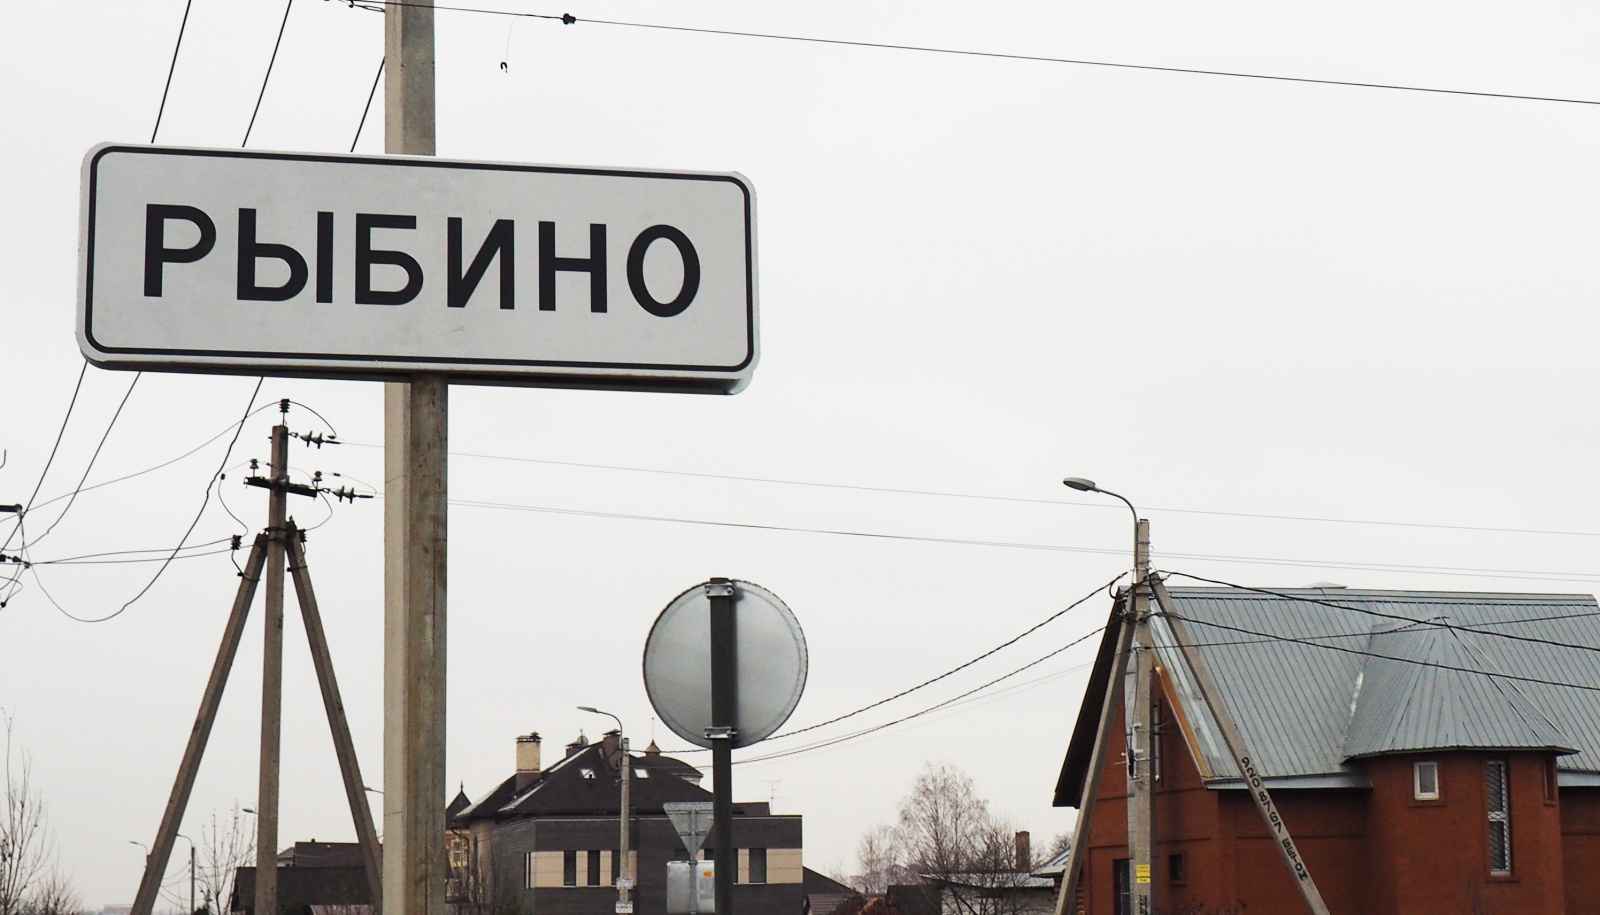 Информационно-указательные знаки установили в деревне Рыбино